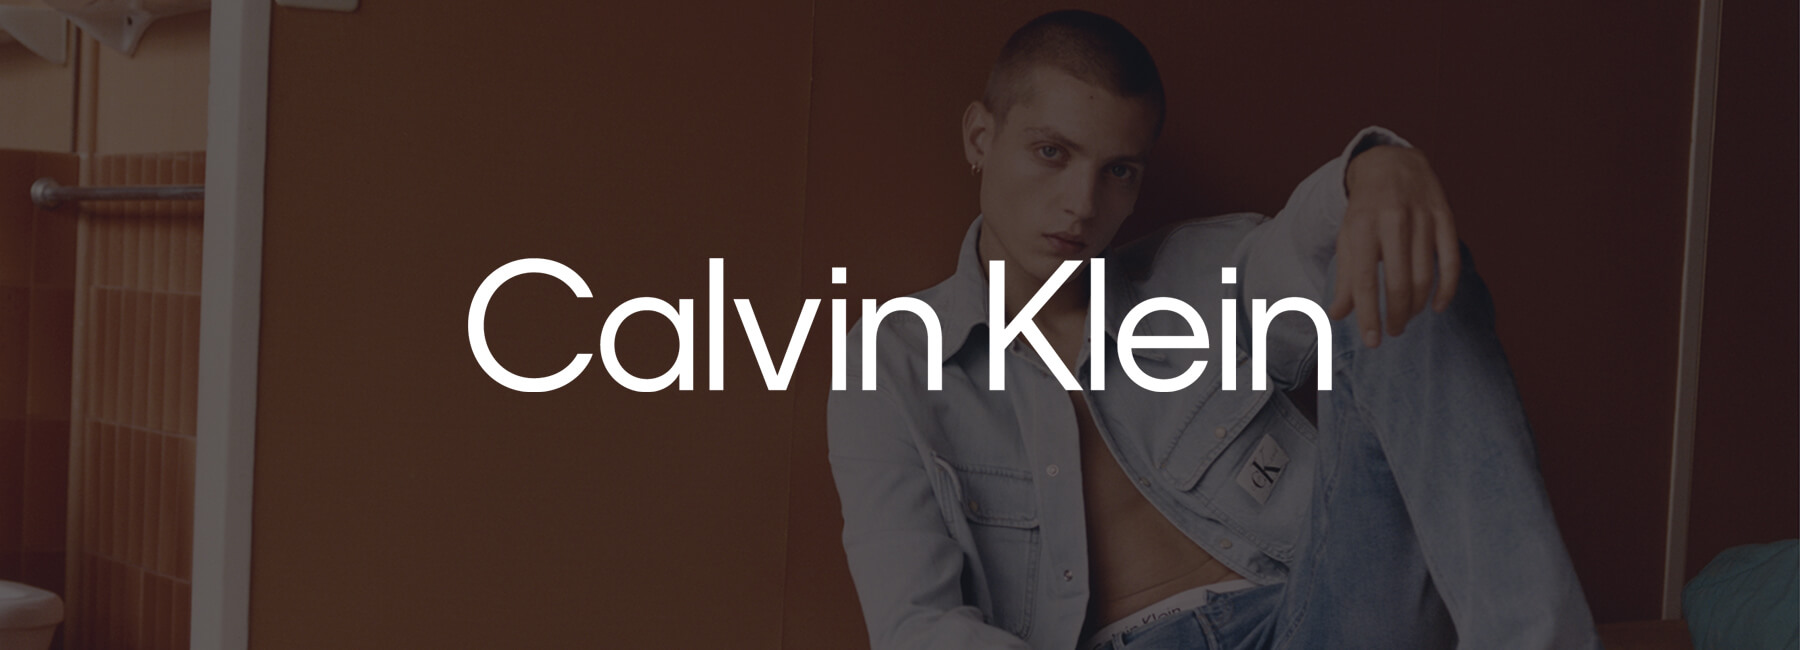 مروری بر برند کلوین کلاین Calvin Klein